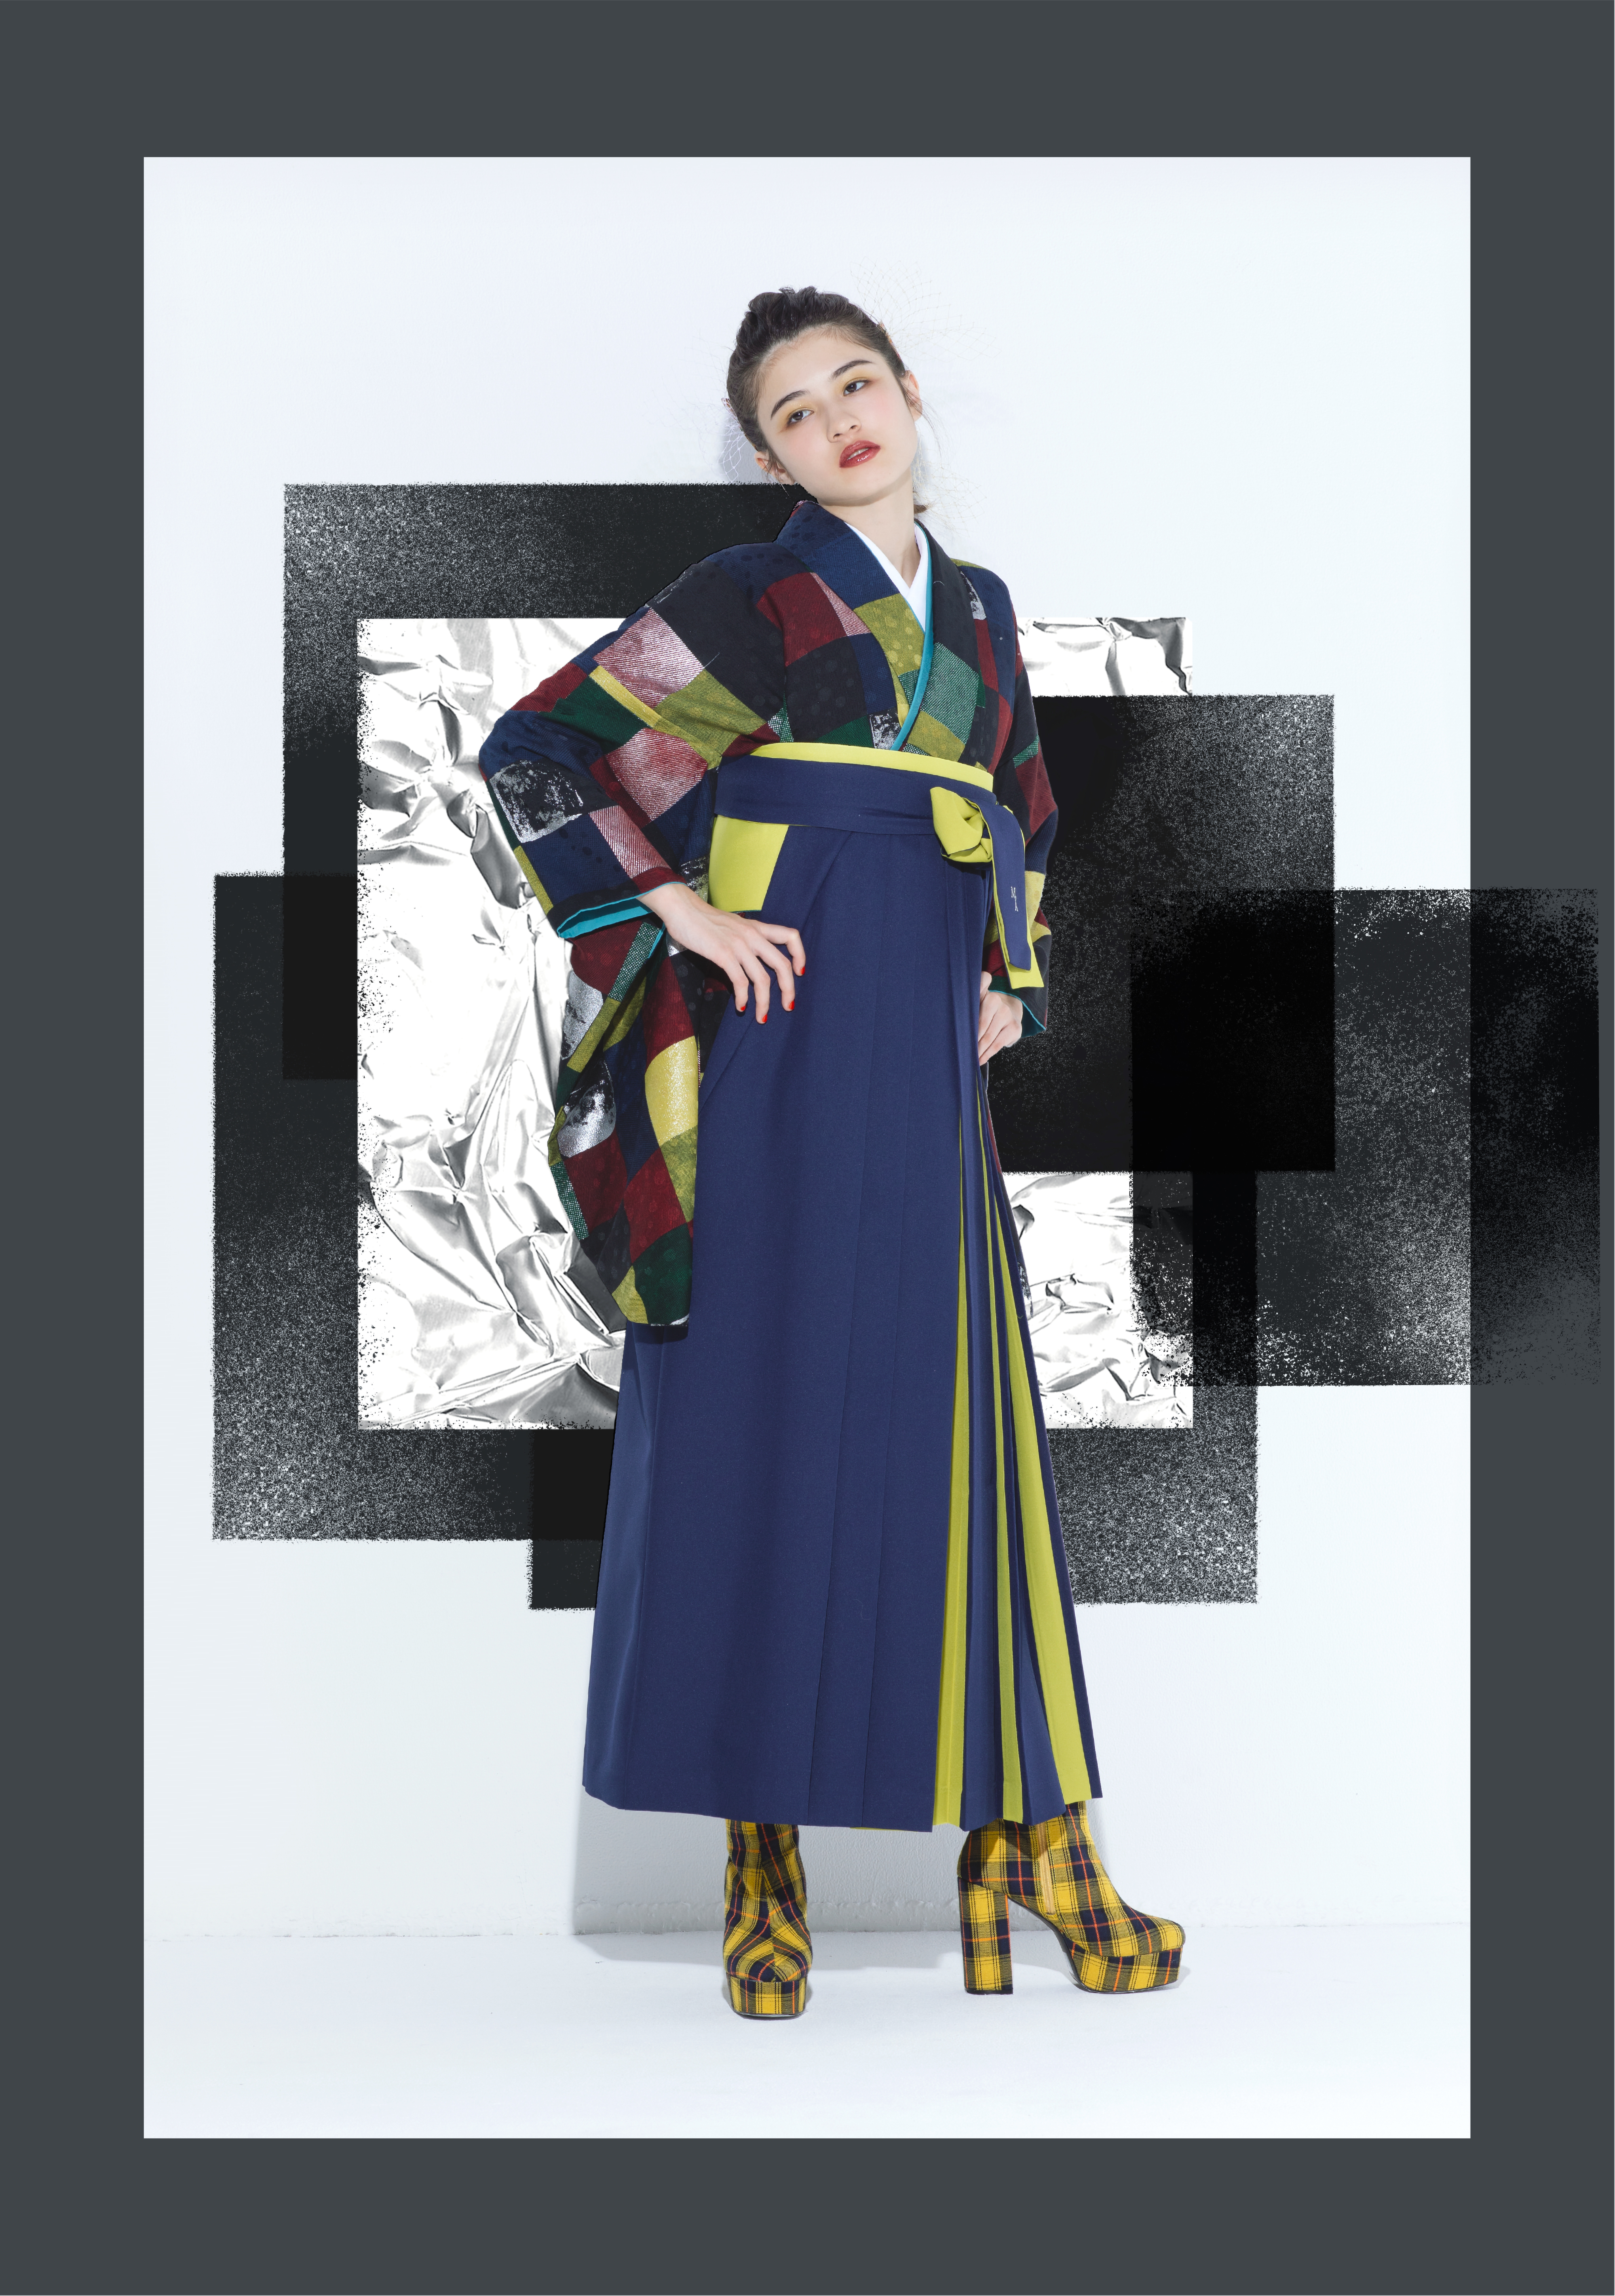 modern antennaブランドの、紺地にチェック柄の二尺袖と、バイカラーの袴の女性用卒業式袴を着用した全身写真